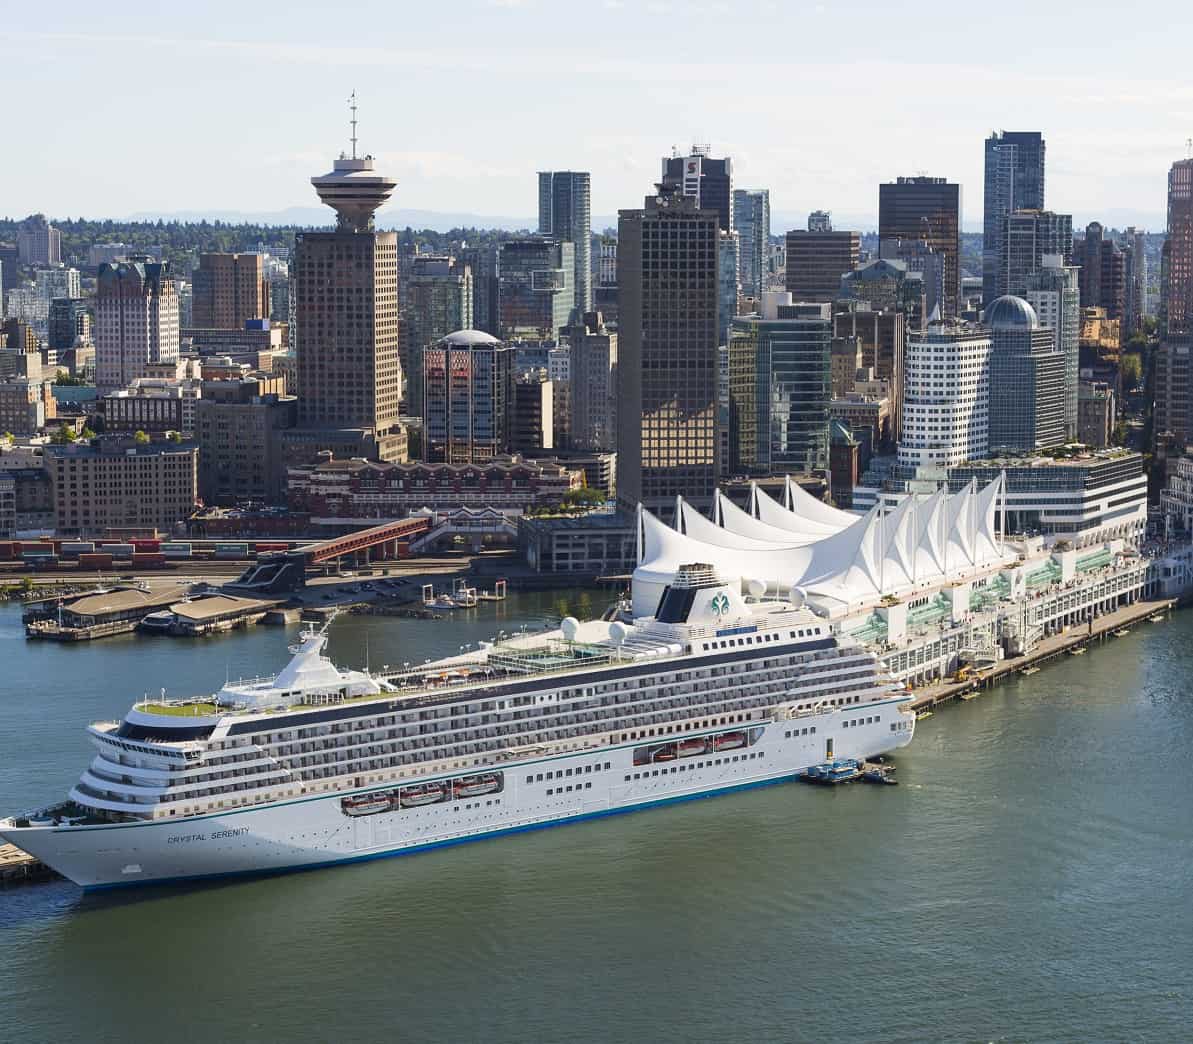 کانادا تدابیر زیست محیطی جدیدی را برای کشتی های کروز در نظر گرفته است